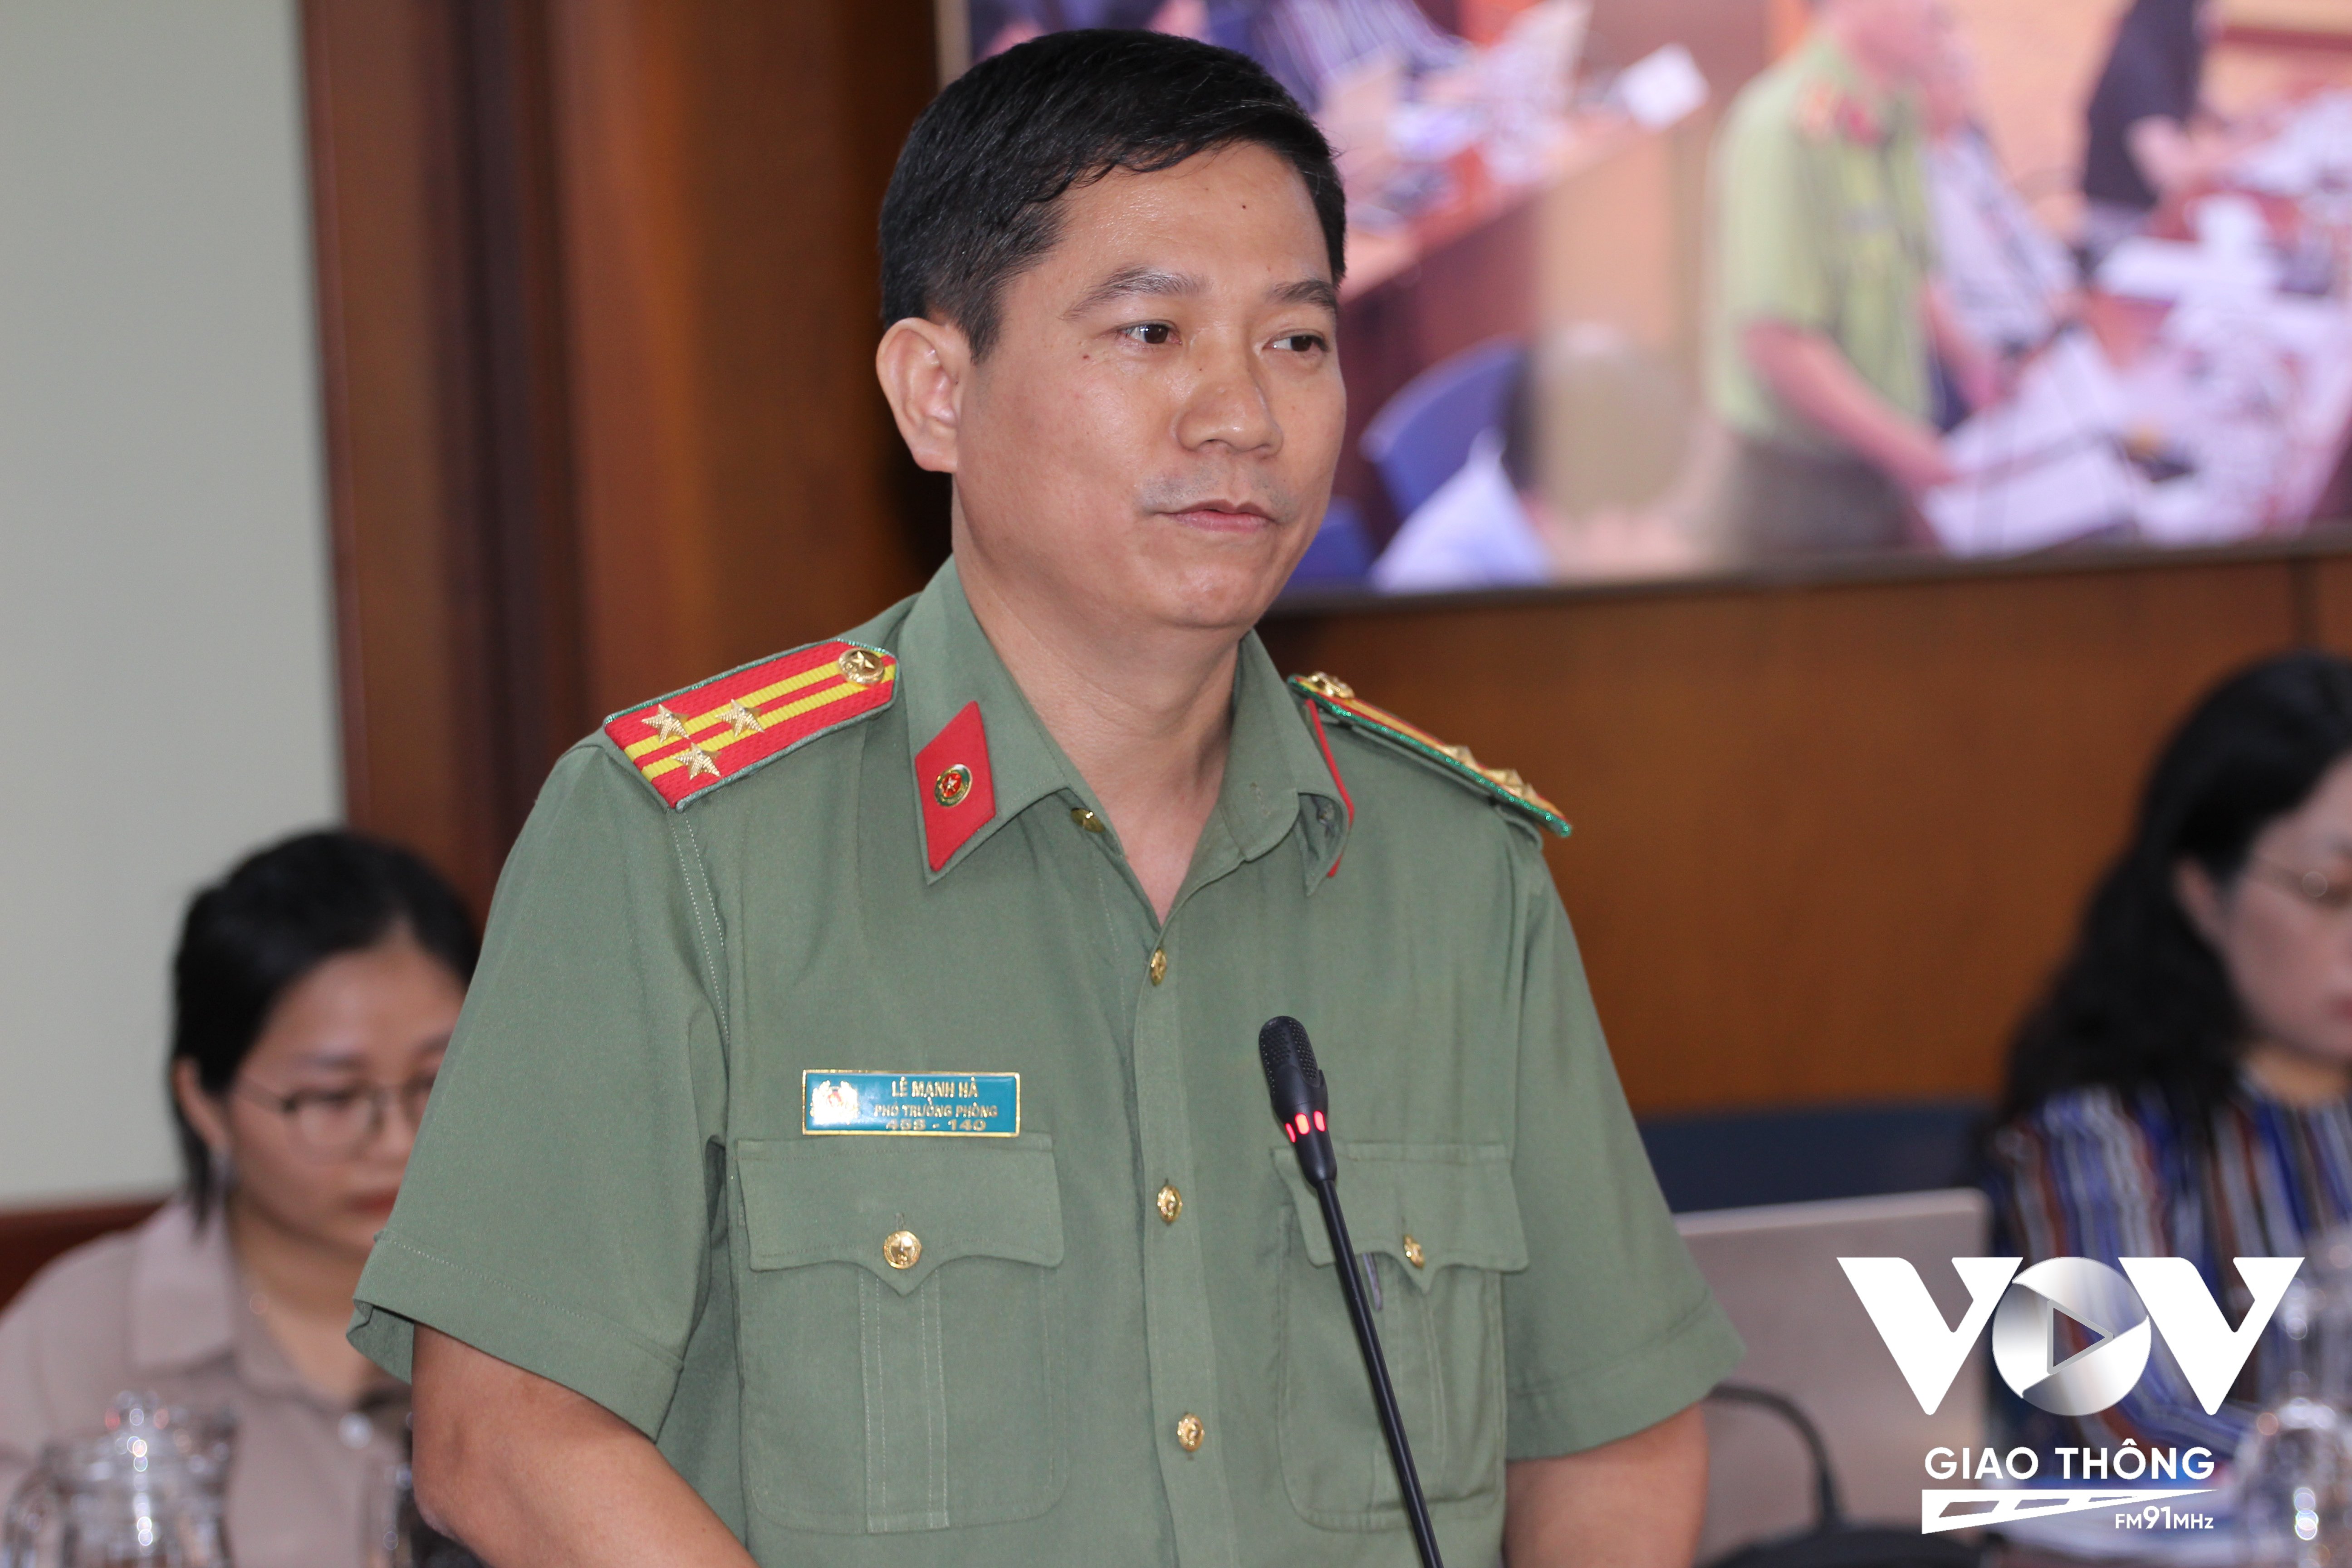 Thượng tá Lê Mạnh Hà – Phó trưởng phòng Tham mưu, Công an TP.HCM thông tin vụ việc điều tra Metro vẽ bậy.